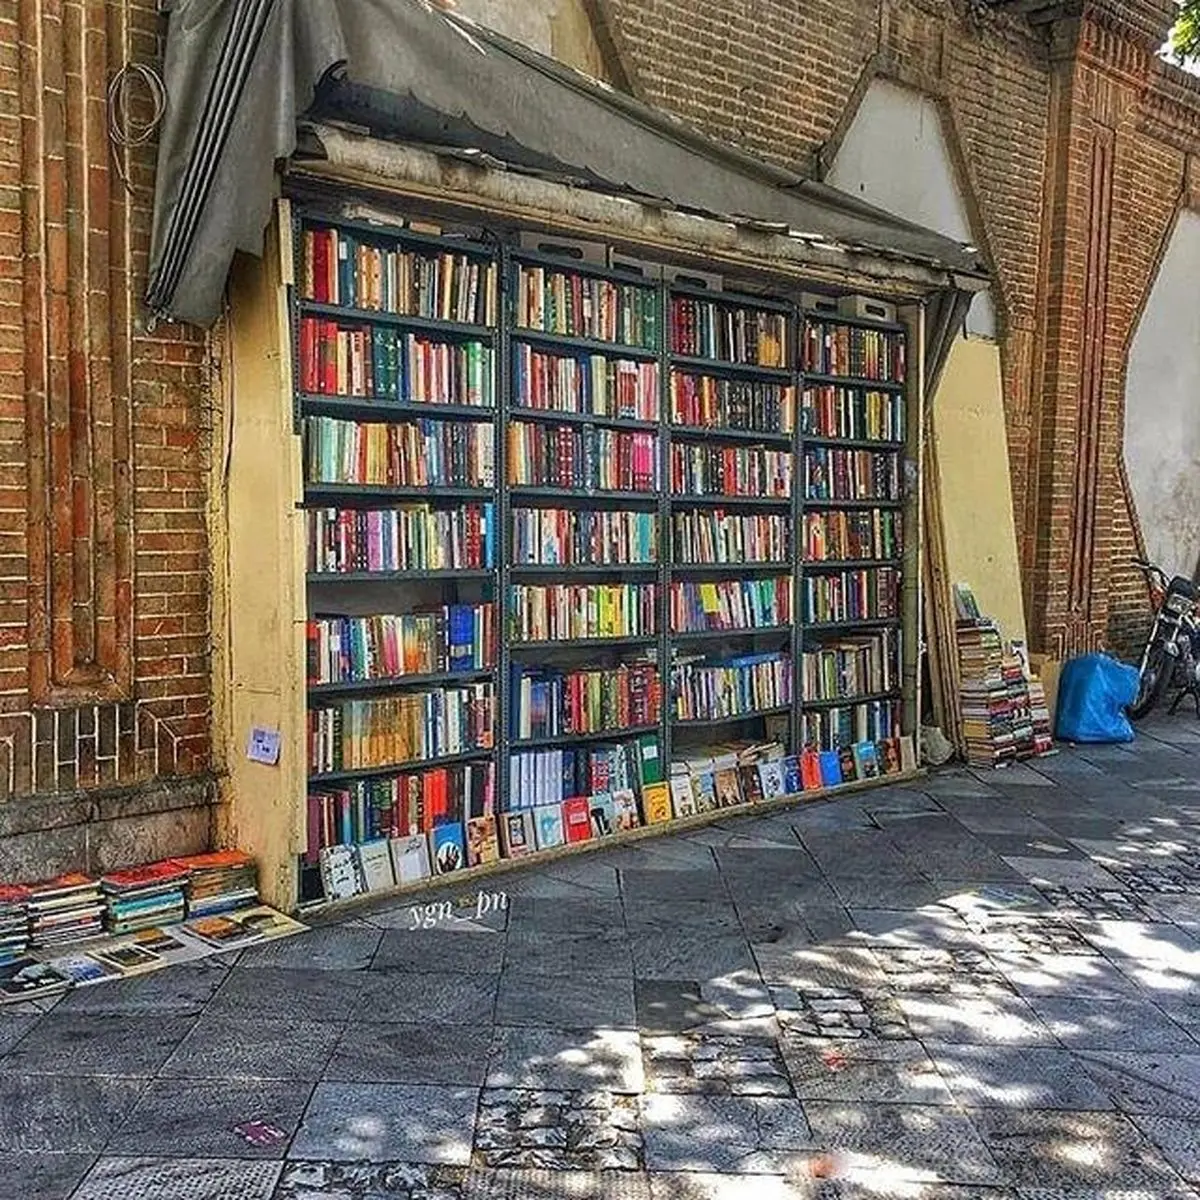 عجیب ترین کتابفروشی در خیابان خیام تهران که فقط یه قفسه است! + تصاویر